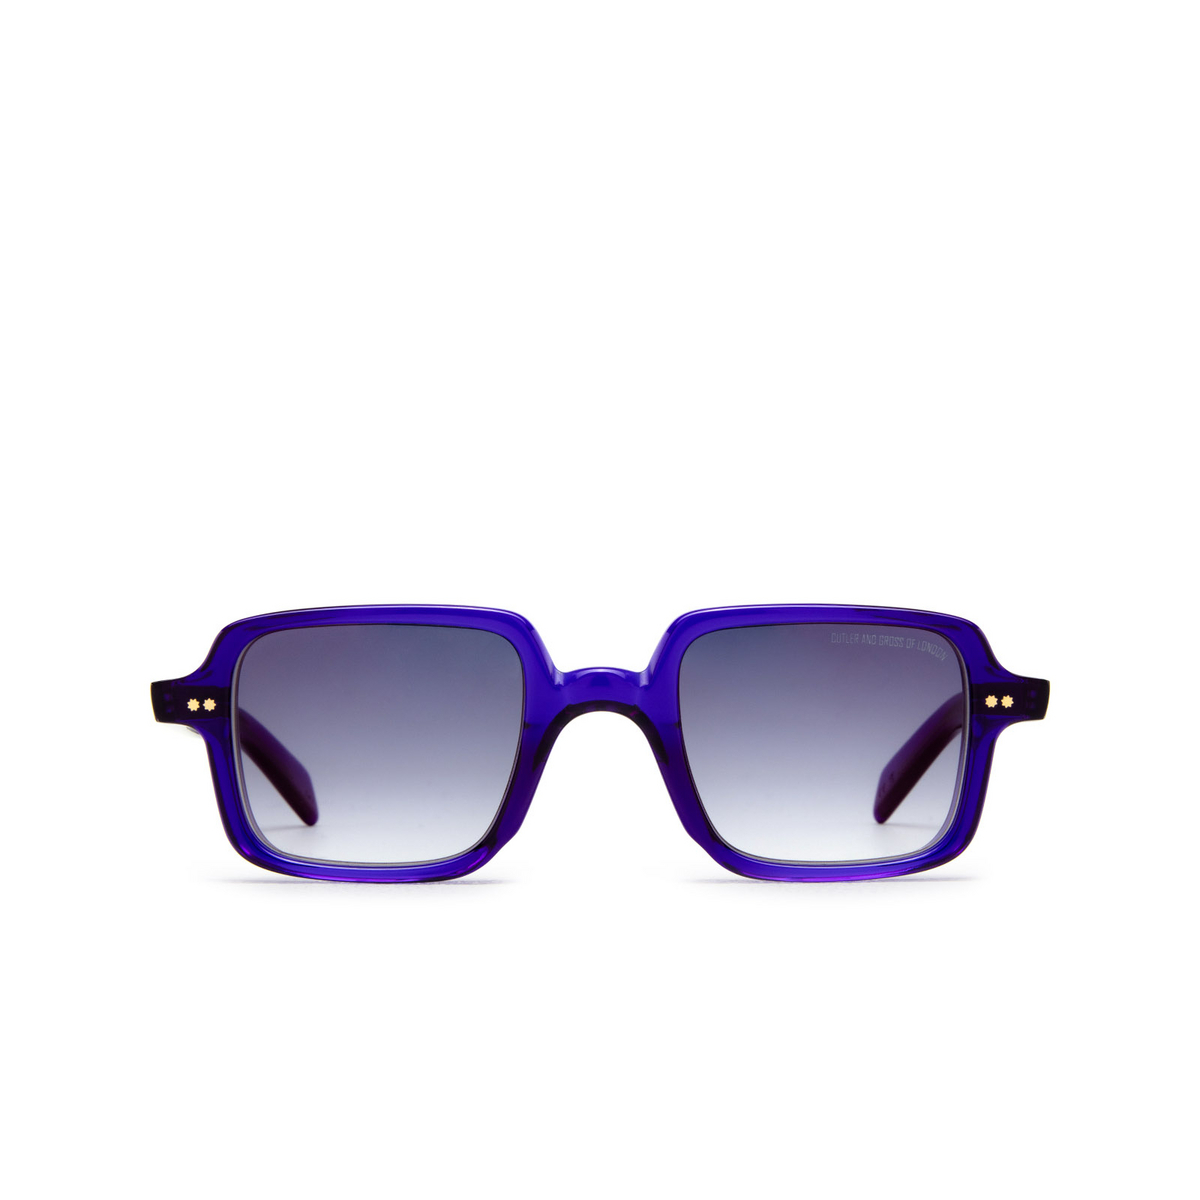 Cutler and Gross GR02 Sunglasses A4 Ink - 1/4